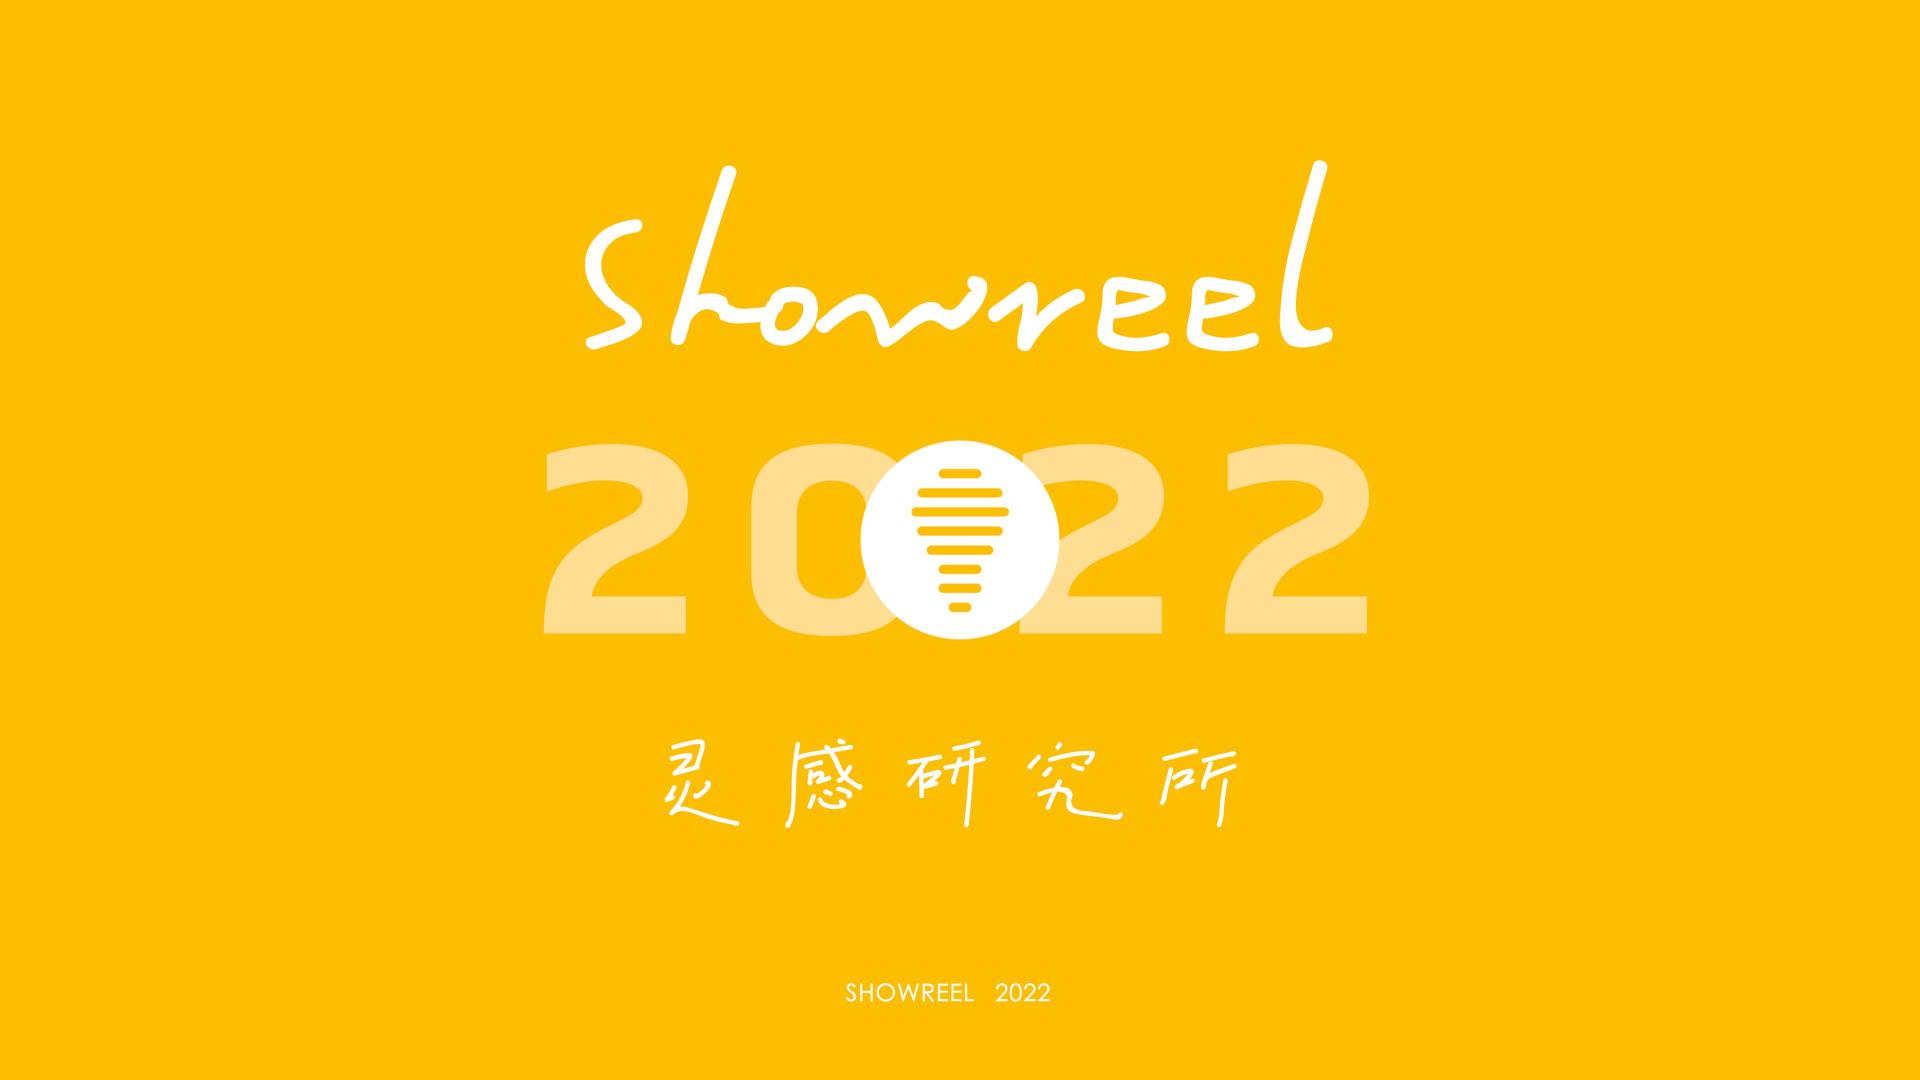 灵感研究所 Showreel 2022